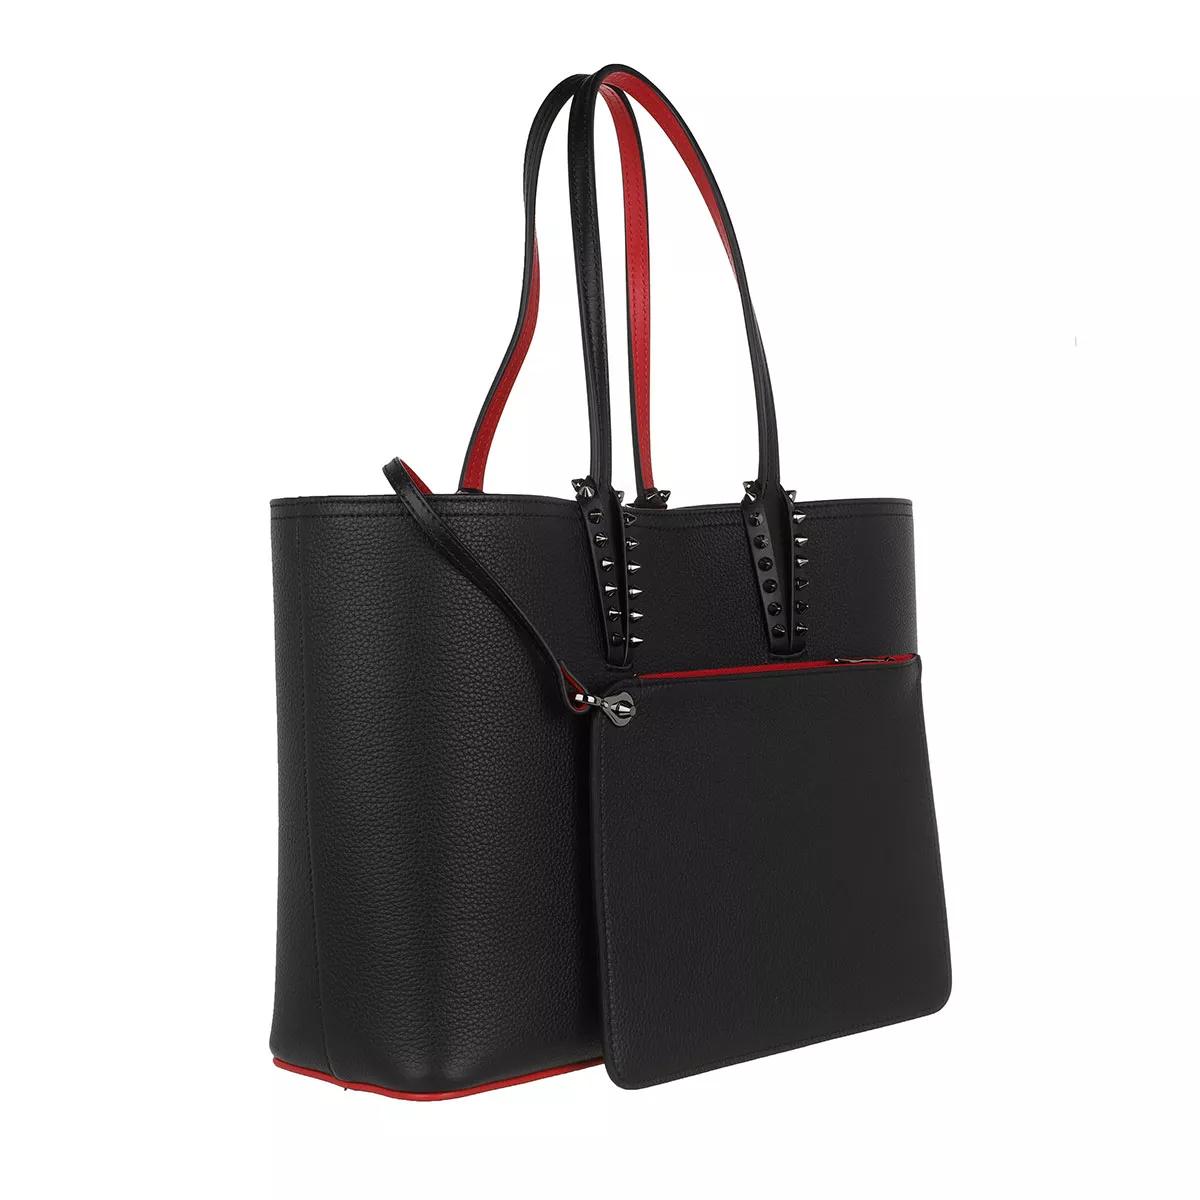 Cabata E/W mini - Tote bag - Calf leather - Black - Christian Louboutin